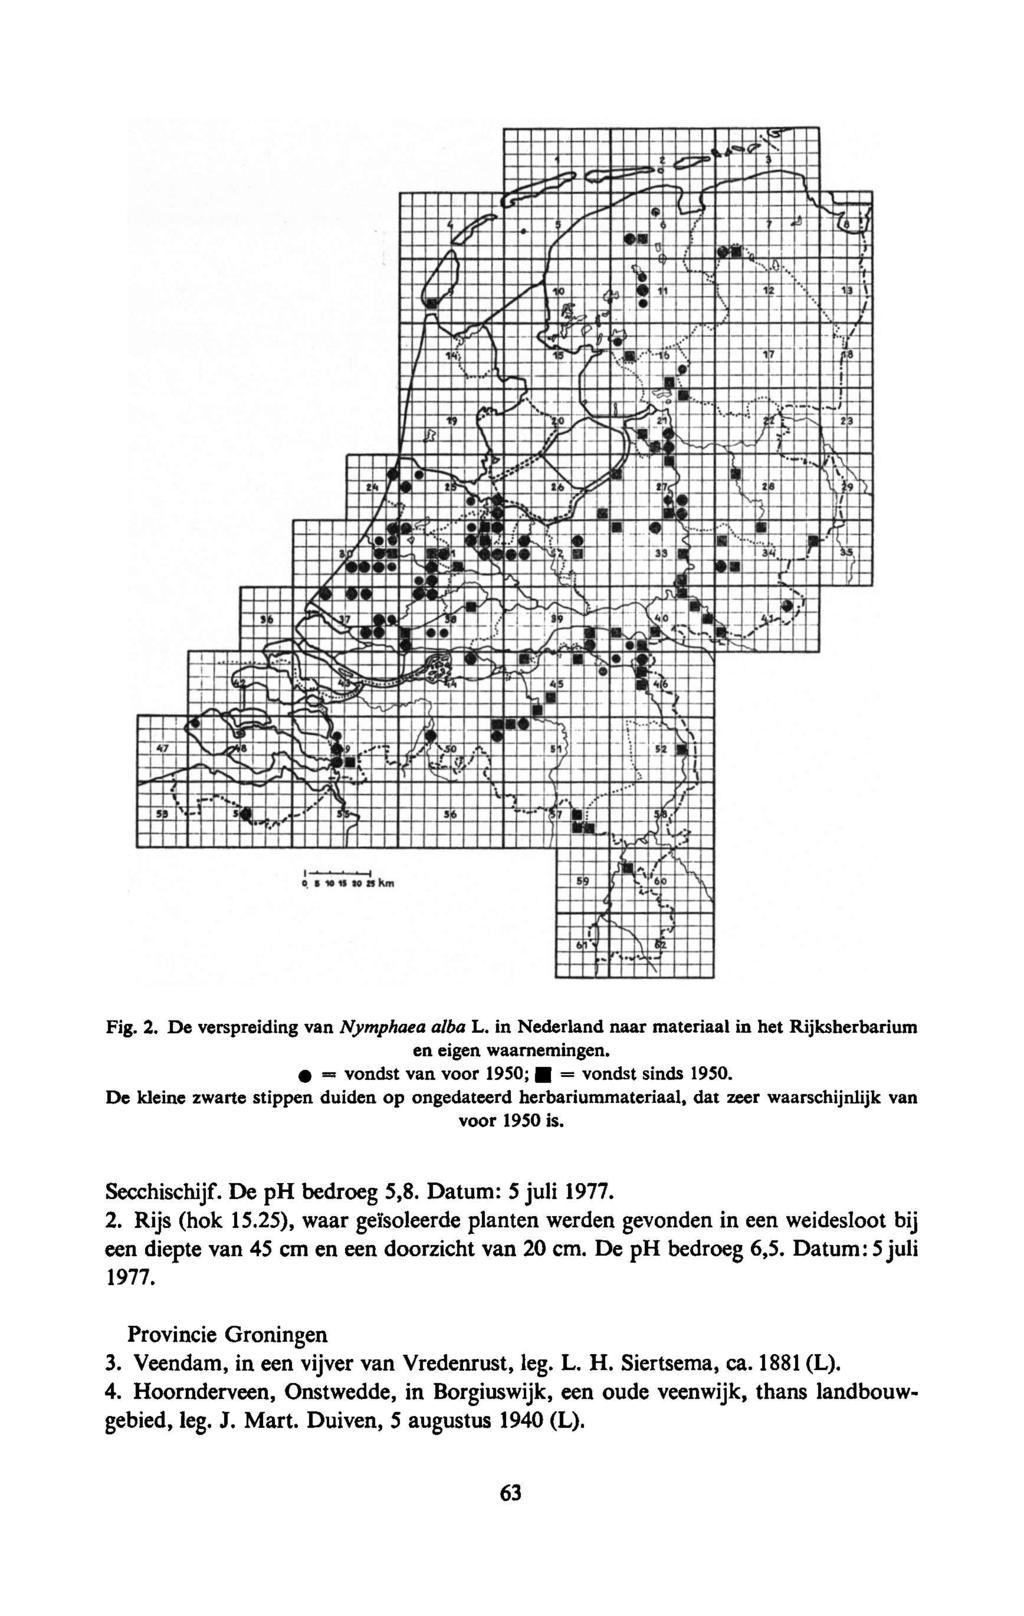 L. in Nederland naar Fig. 2. De verspreiding van Nymphaea alba materiaal in het Rijksherbarium en eigen waarnemingen. = vondst van voor 1950; = vondst sinds 1950.